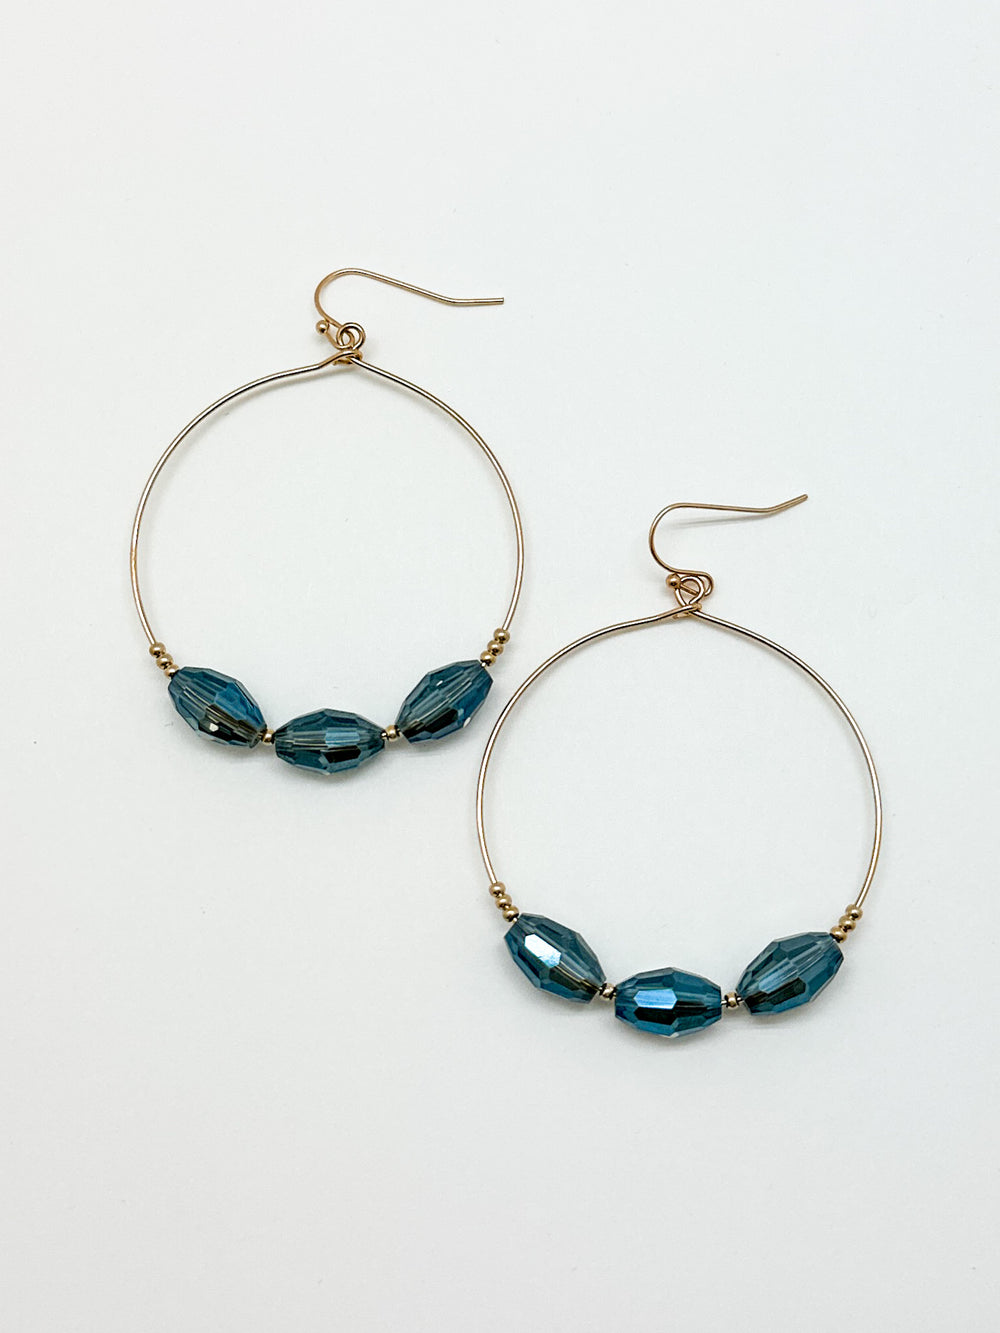 3 Blue Beaded Hoop Earrings. Gold hoop earrings with blue beads.